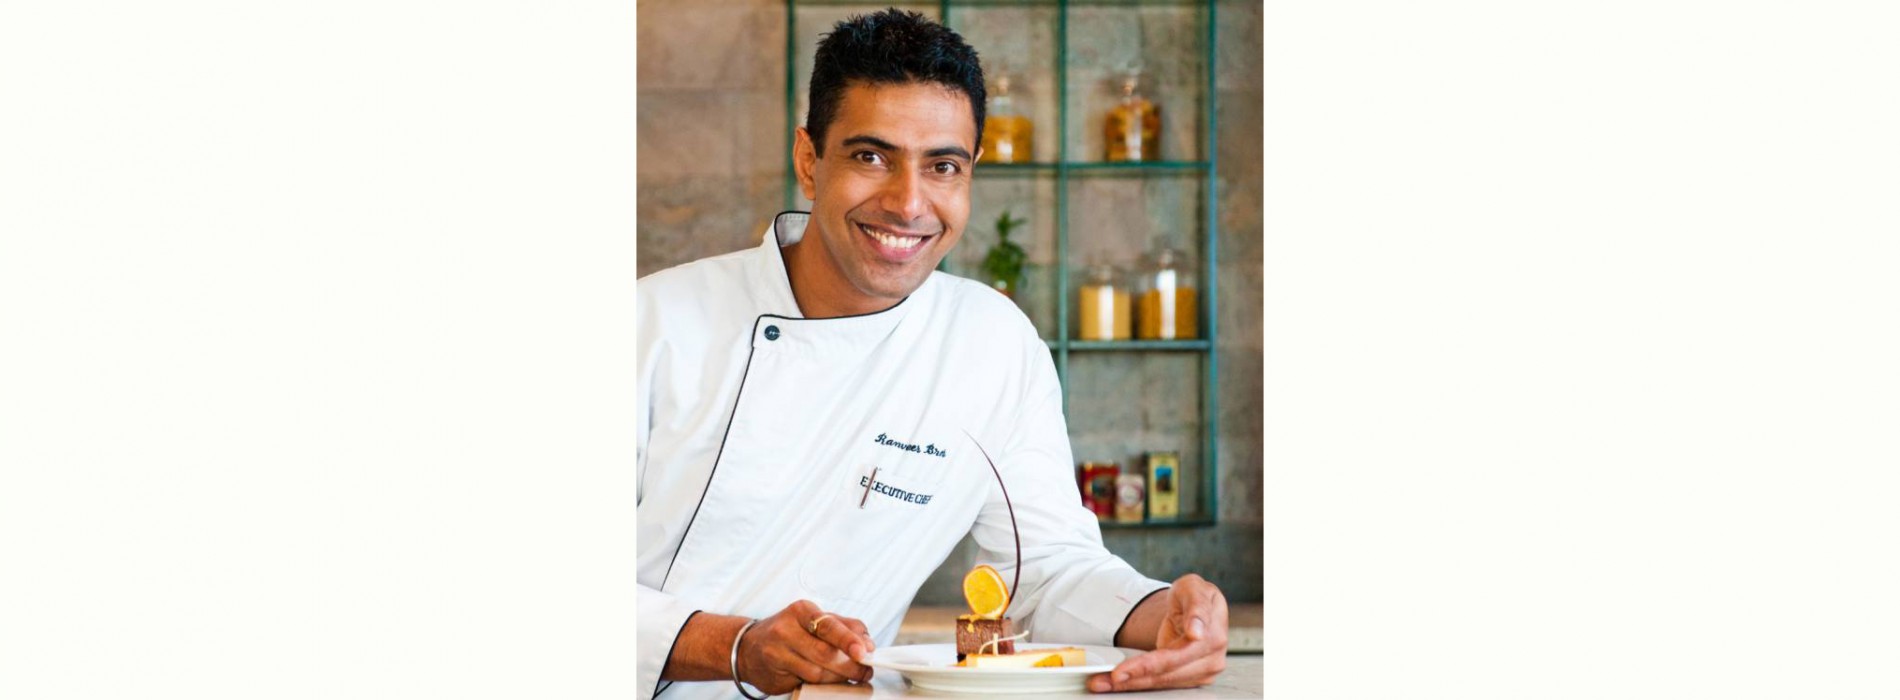 TIRUN brings onboard renowned Indian Chef Ranveer Brar